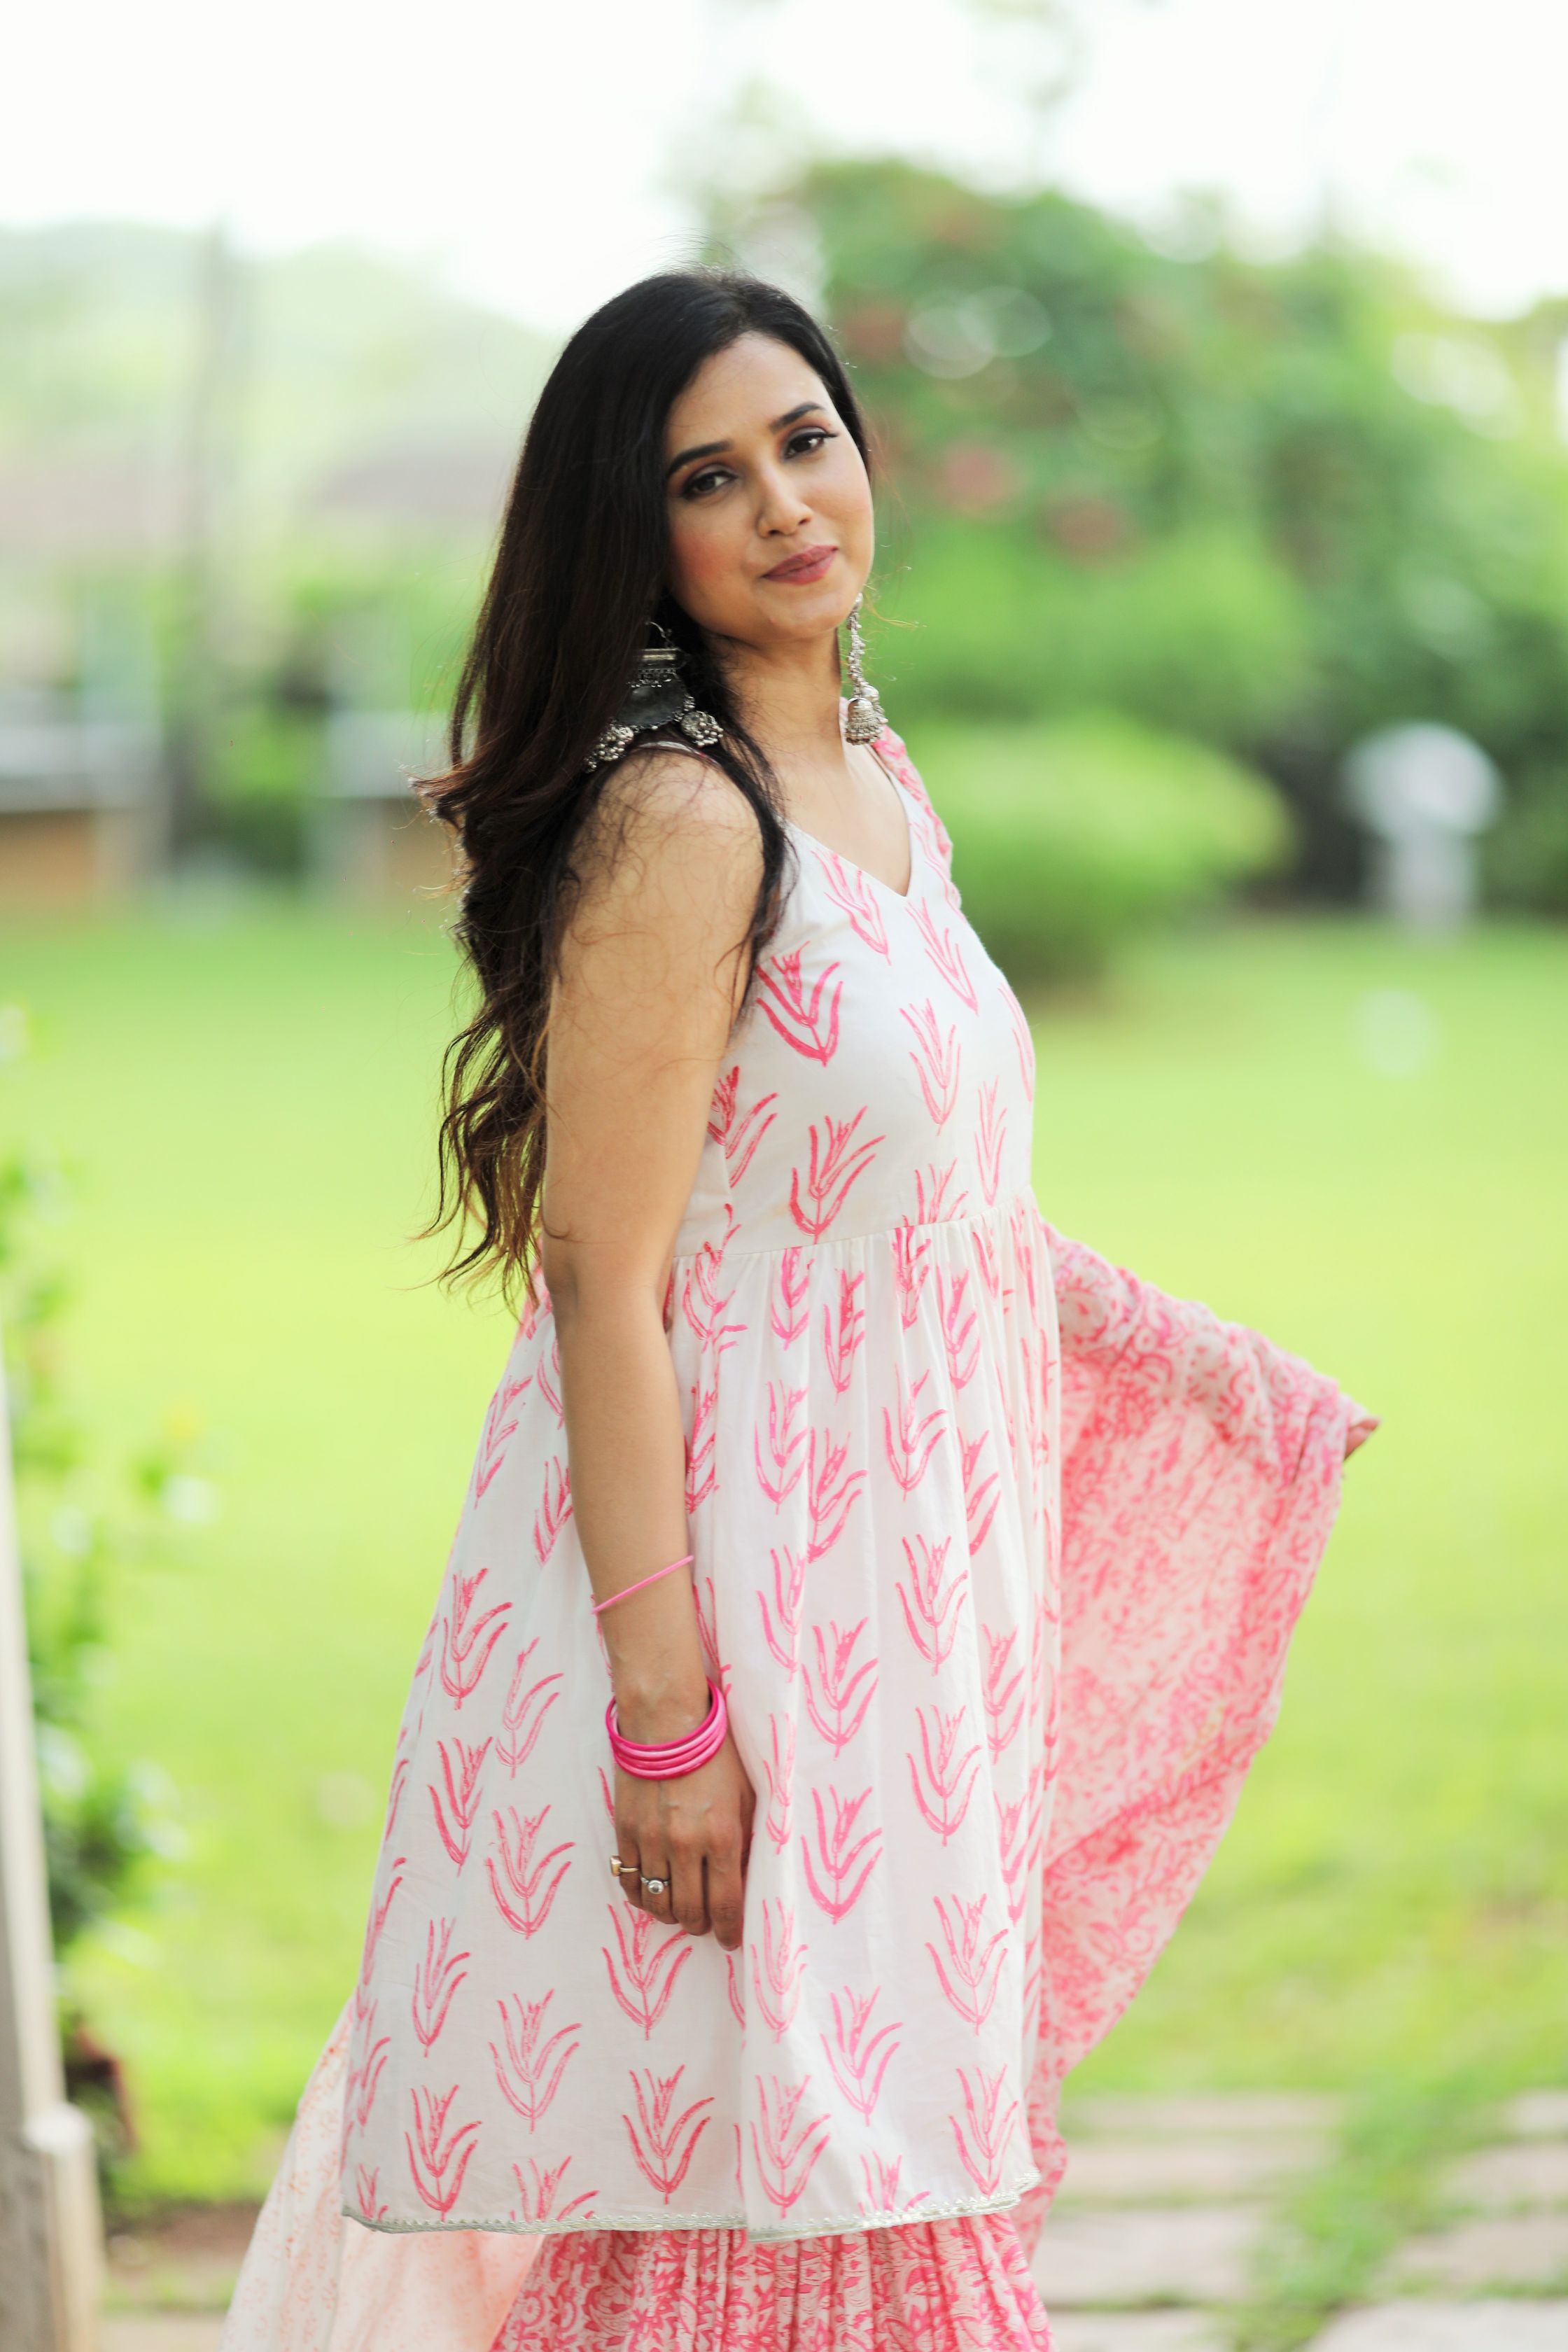 How to Pose like an Influencer in Lehenga - Debasree Banerjee | KALKI  Fashion Blogs